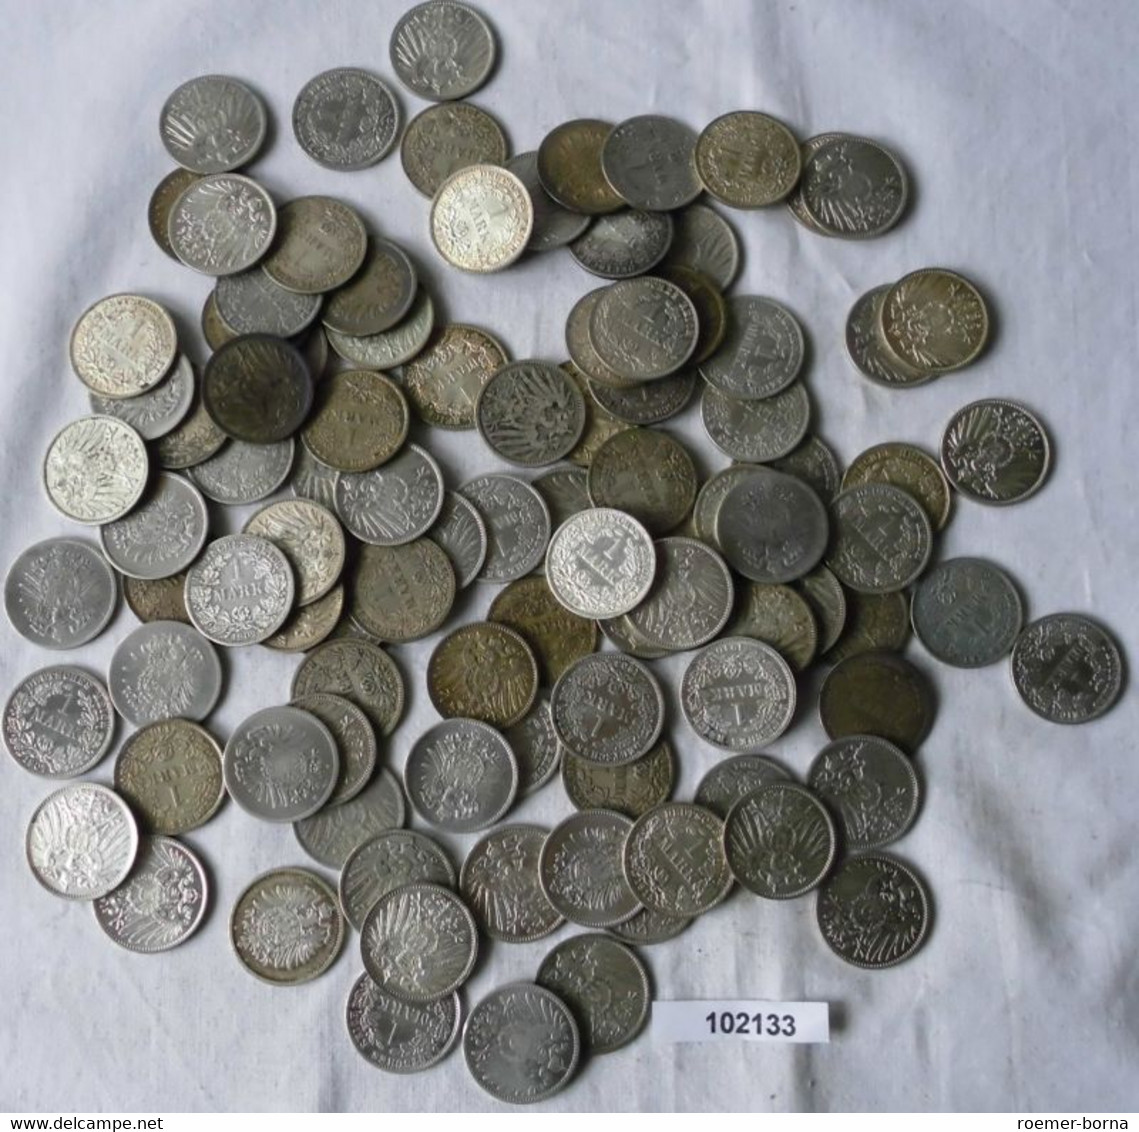 Seltene Sammlung 100 Silbermünzen 1 Mark Deutsches Reich Kaiserreich (102133) - Vrac - Monnaies